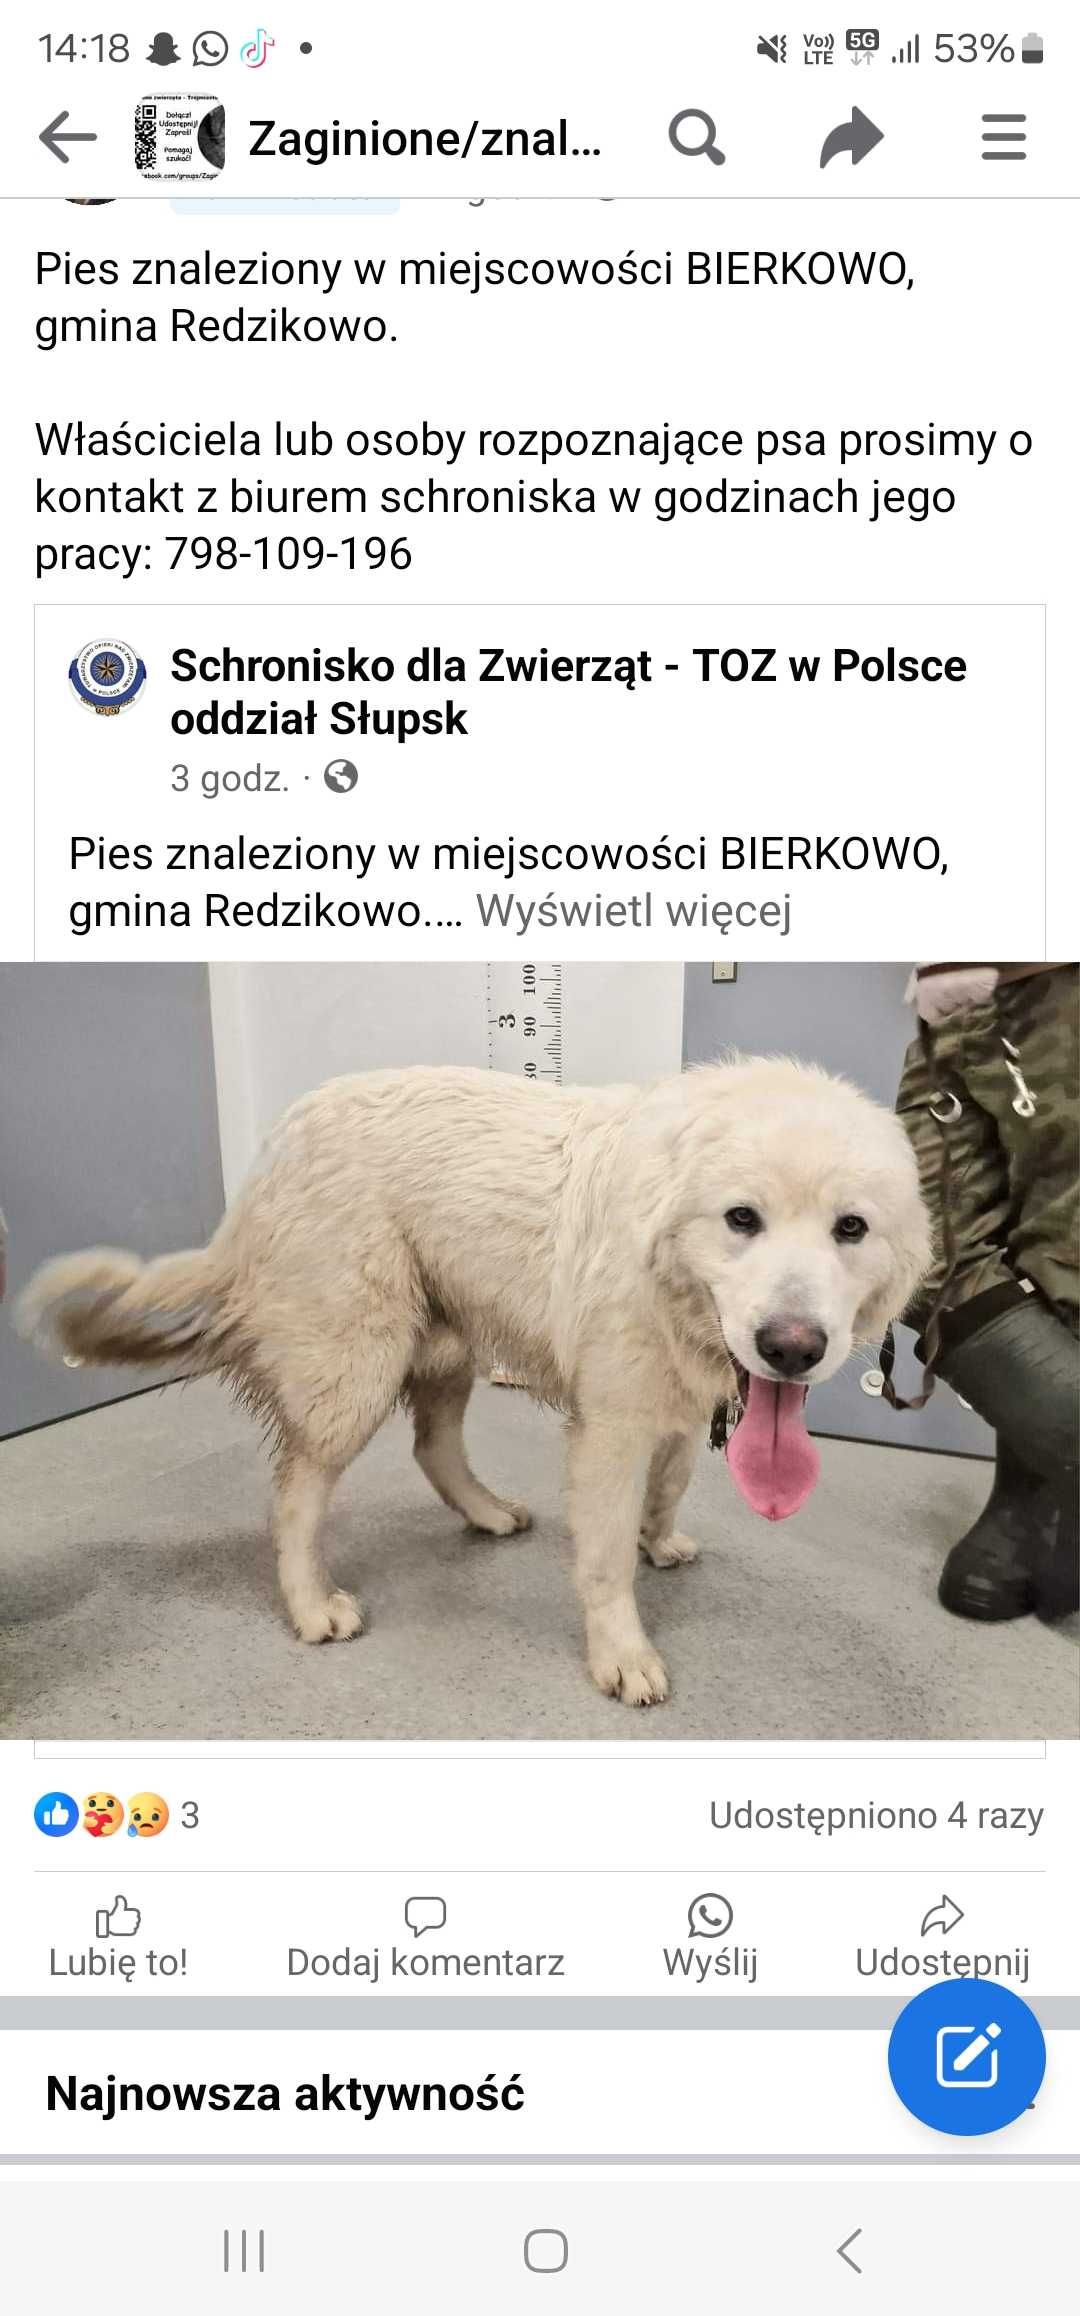 Pies znaleziony w miejscowości bierkowo